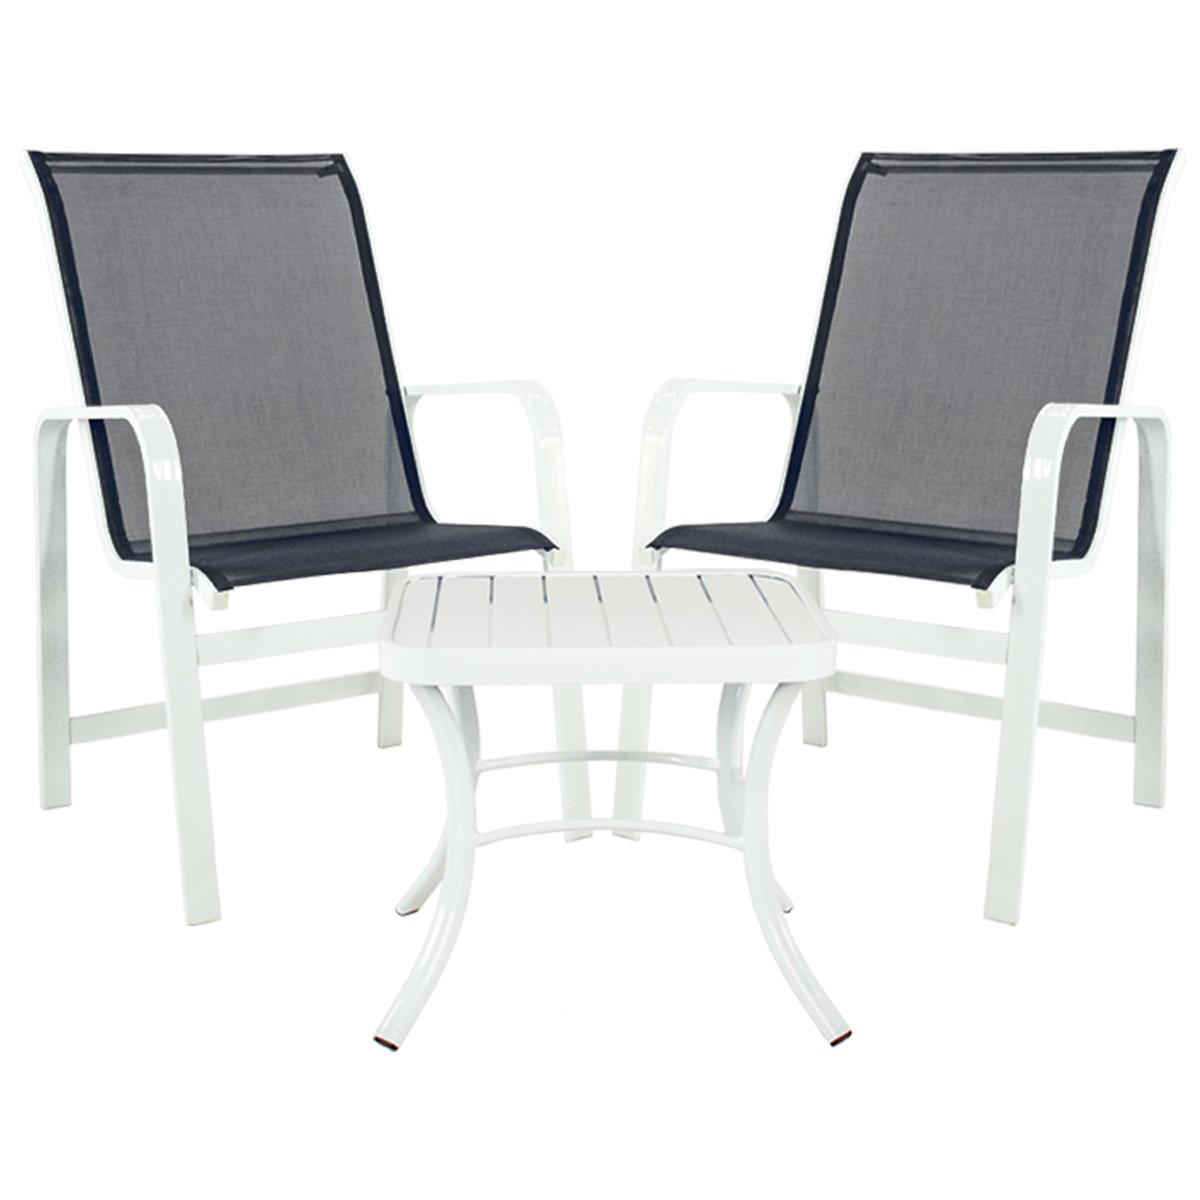 Conjunto 4 Cadeiras Classic em Tela + 1 Mesa Baixa em Alumínio Pintado - 2